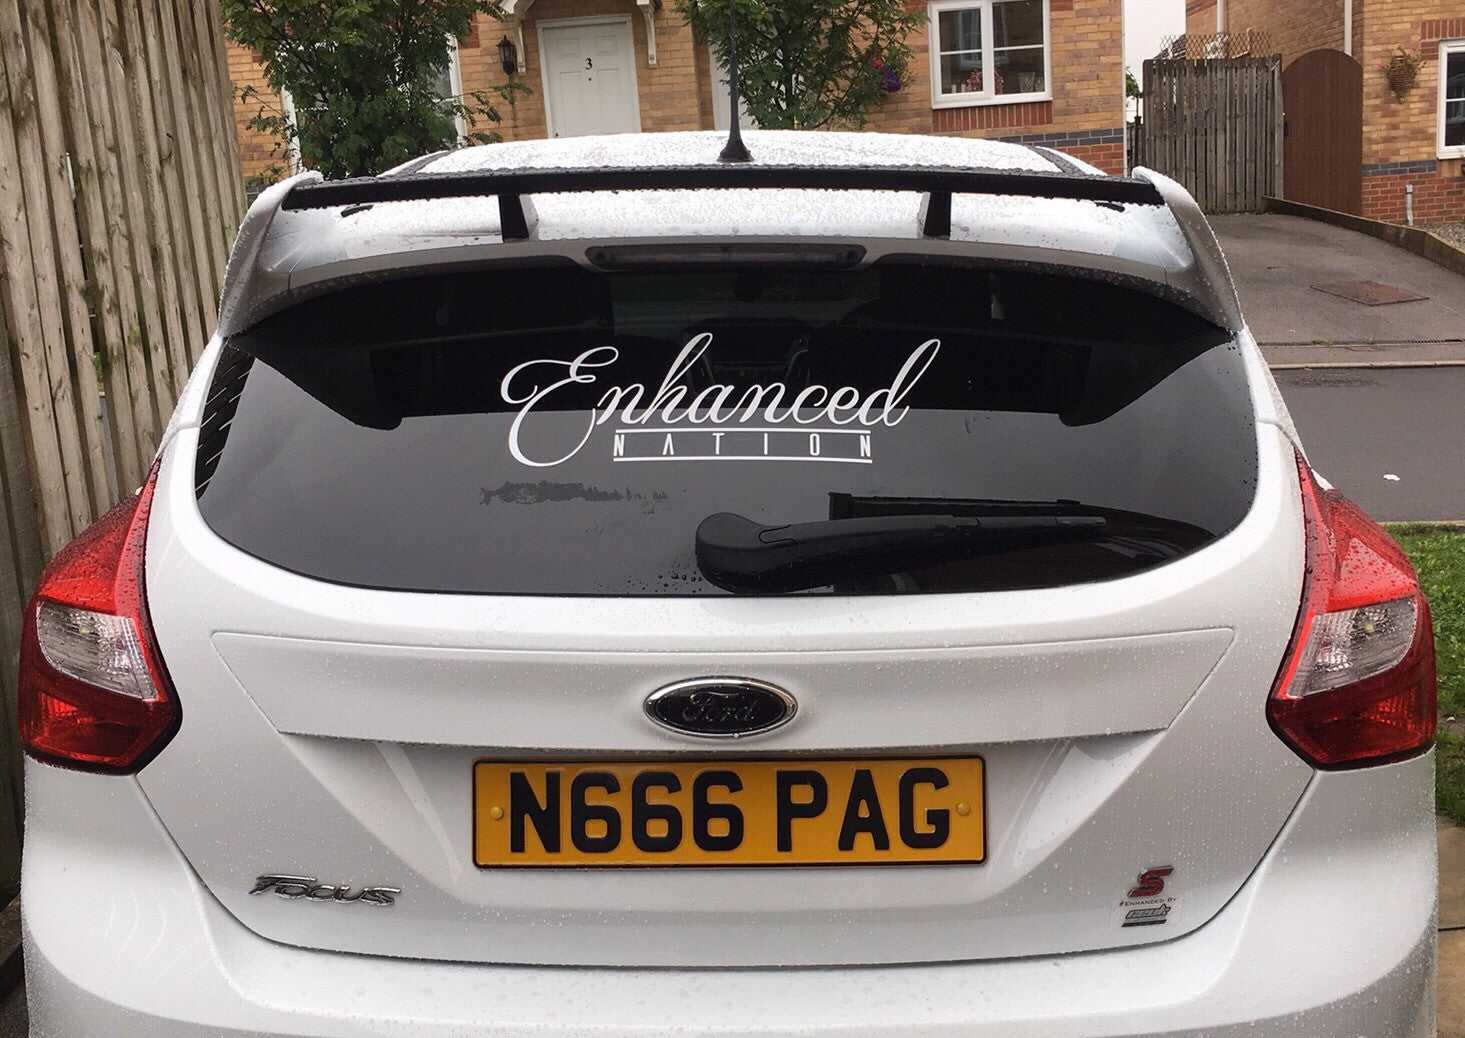 Car Enhancements UK, Enhanced Nation rear windscreen sticker